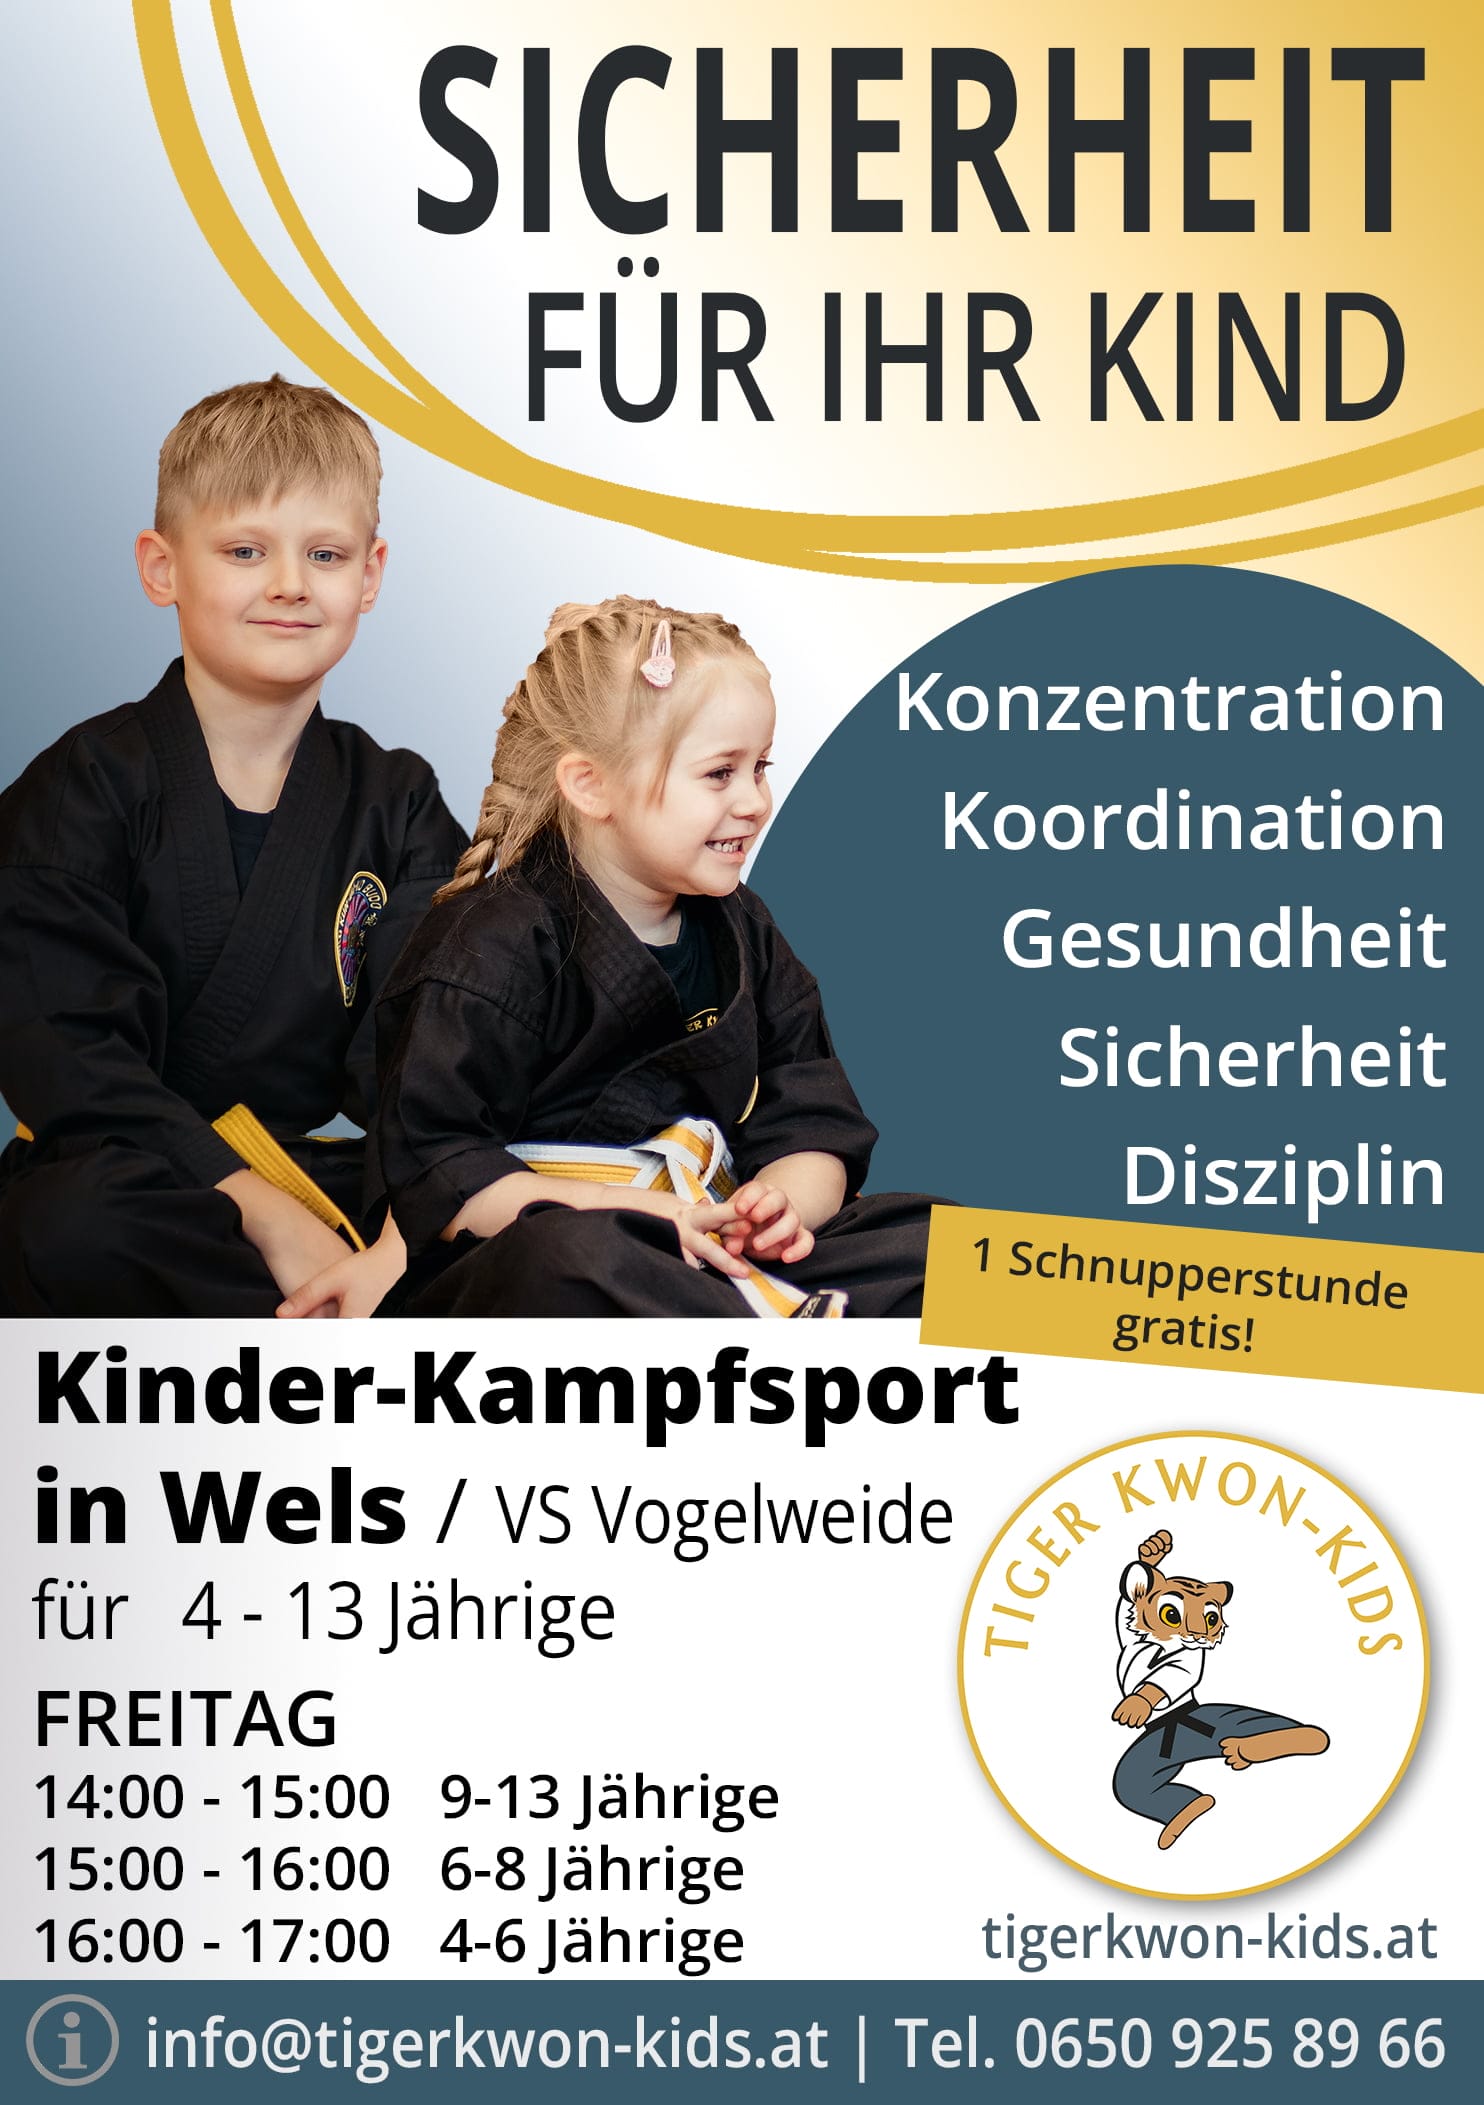 Flyer des Tiger Kwon - Kids Standorts in Wels mit Informationen zu Trainingsort und -zeit, illustriert durch fröhliche Jungen und Mädchen.